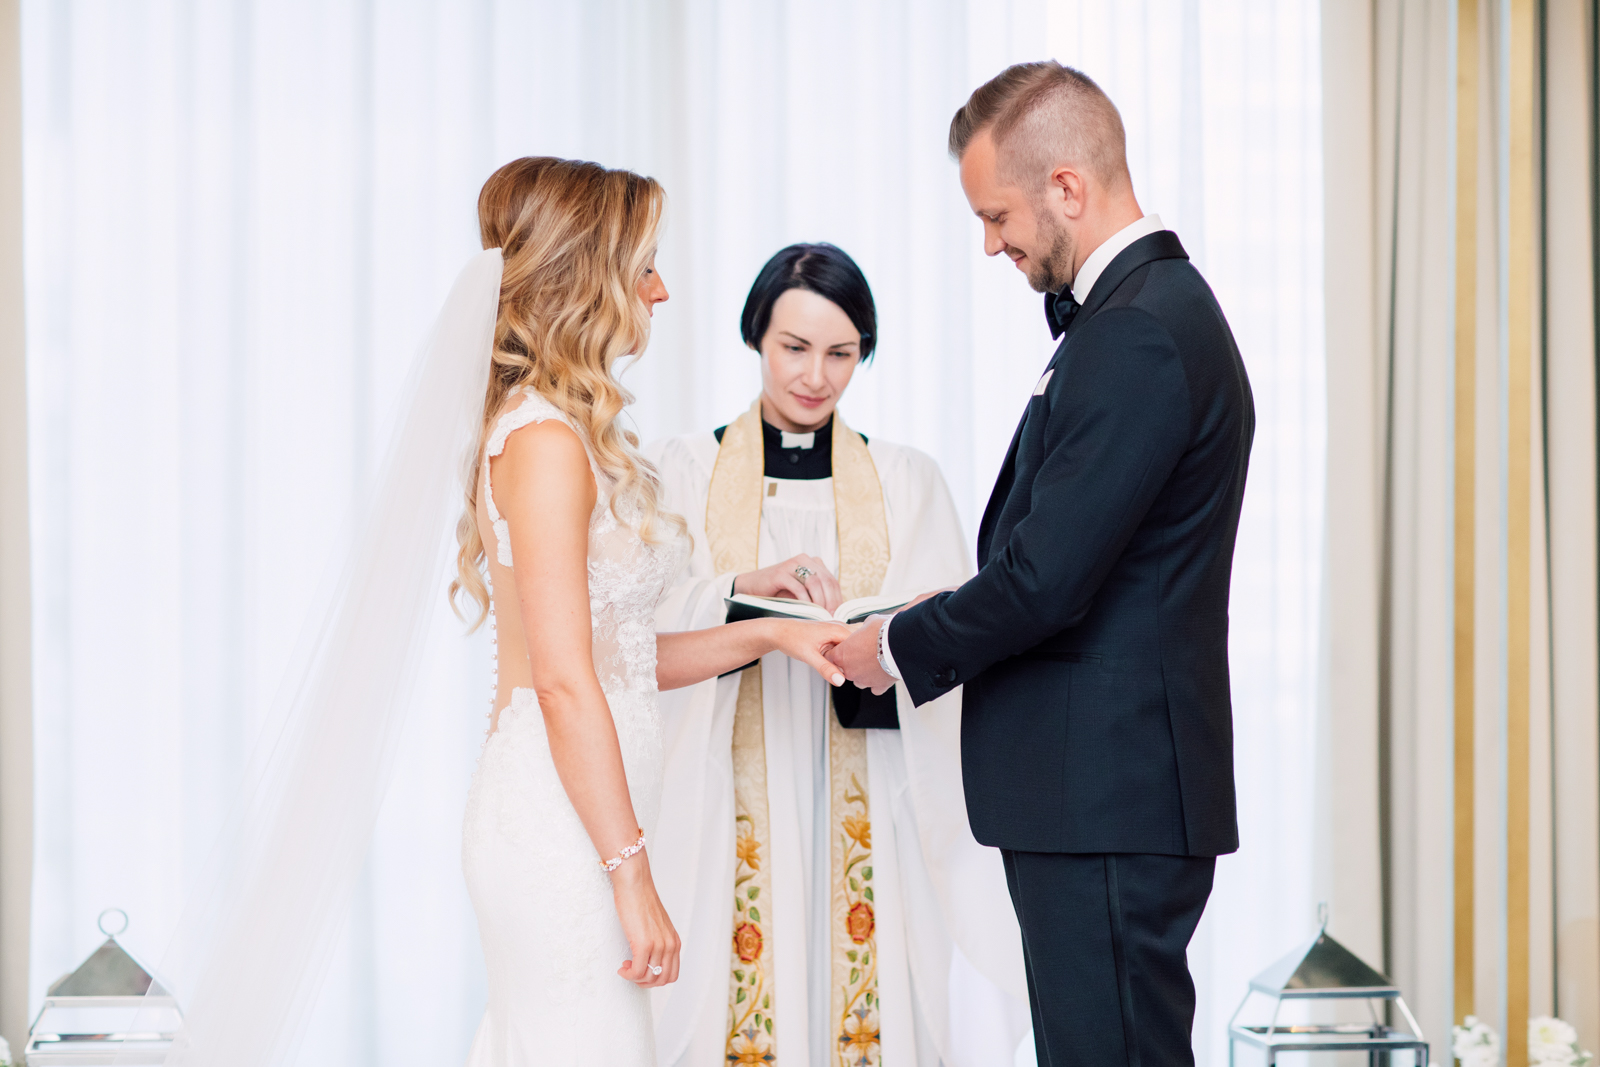 Bride and groom rings